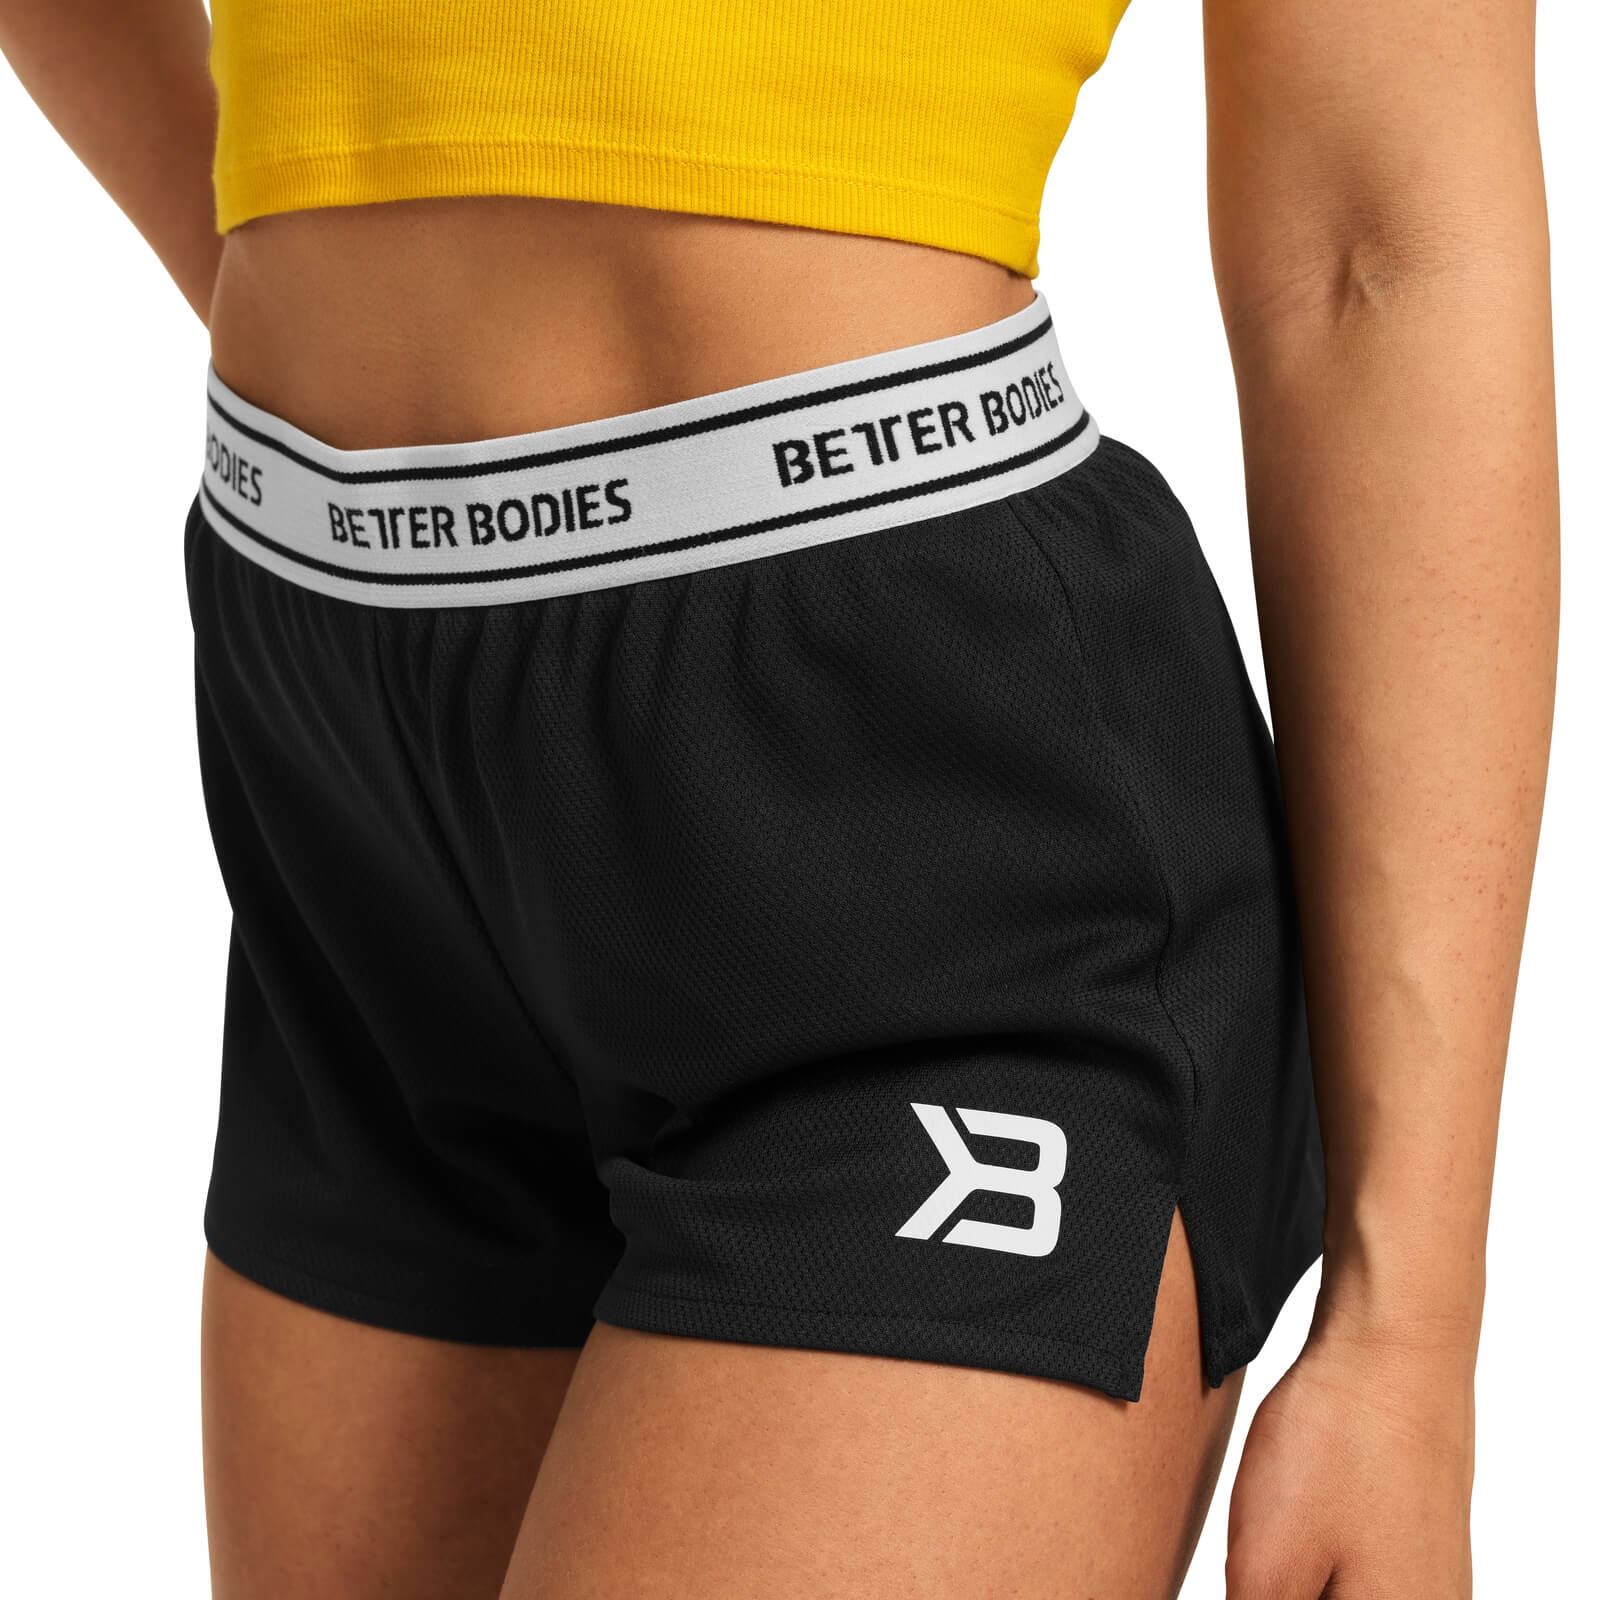 Sjekke Highbridge Shorts, black, Better Bodies hos SportGymButikken.no